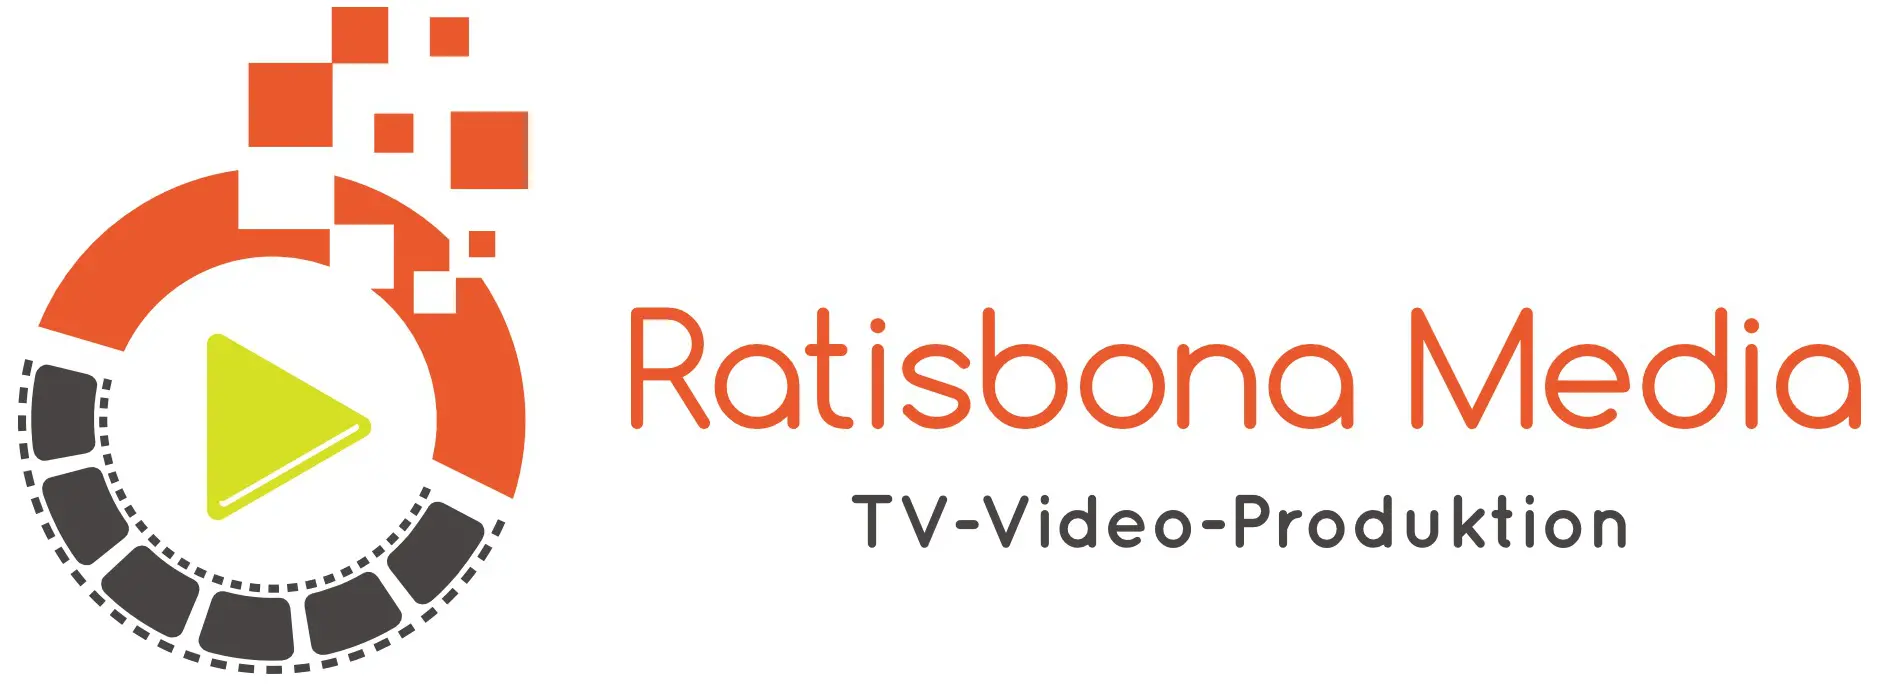 Ratisbona Media